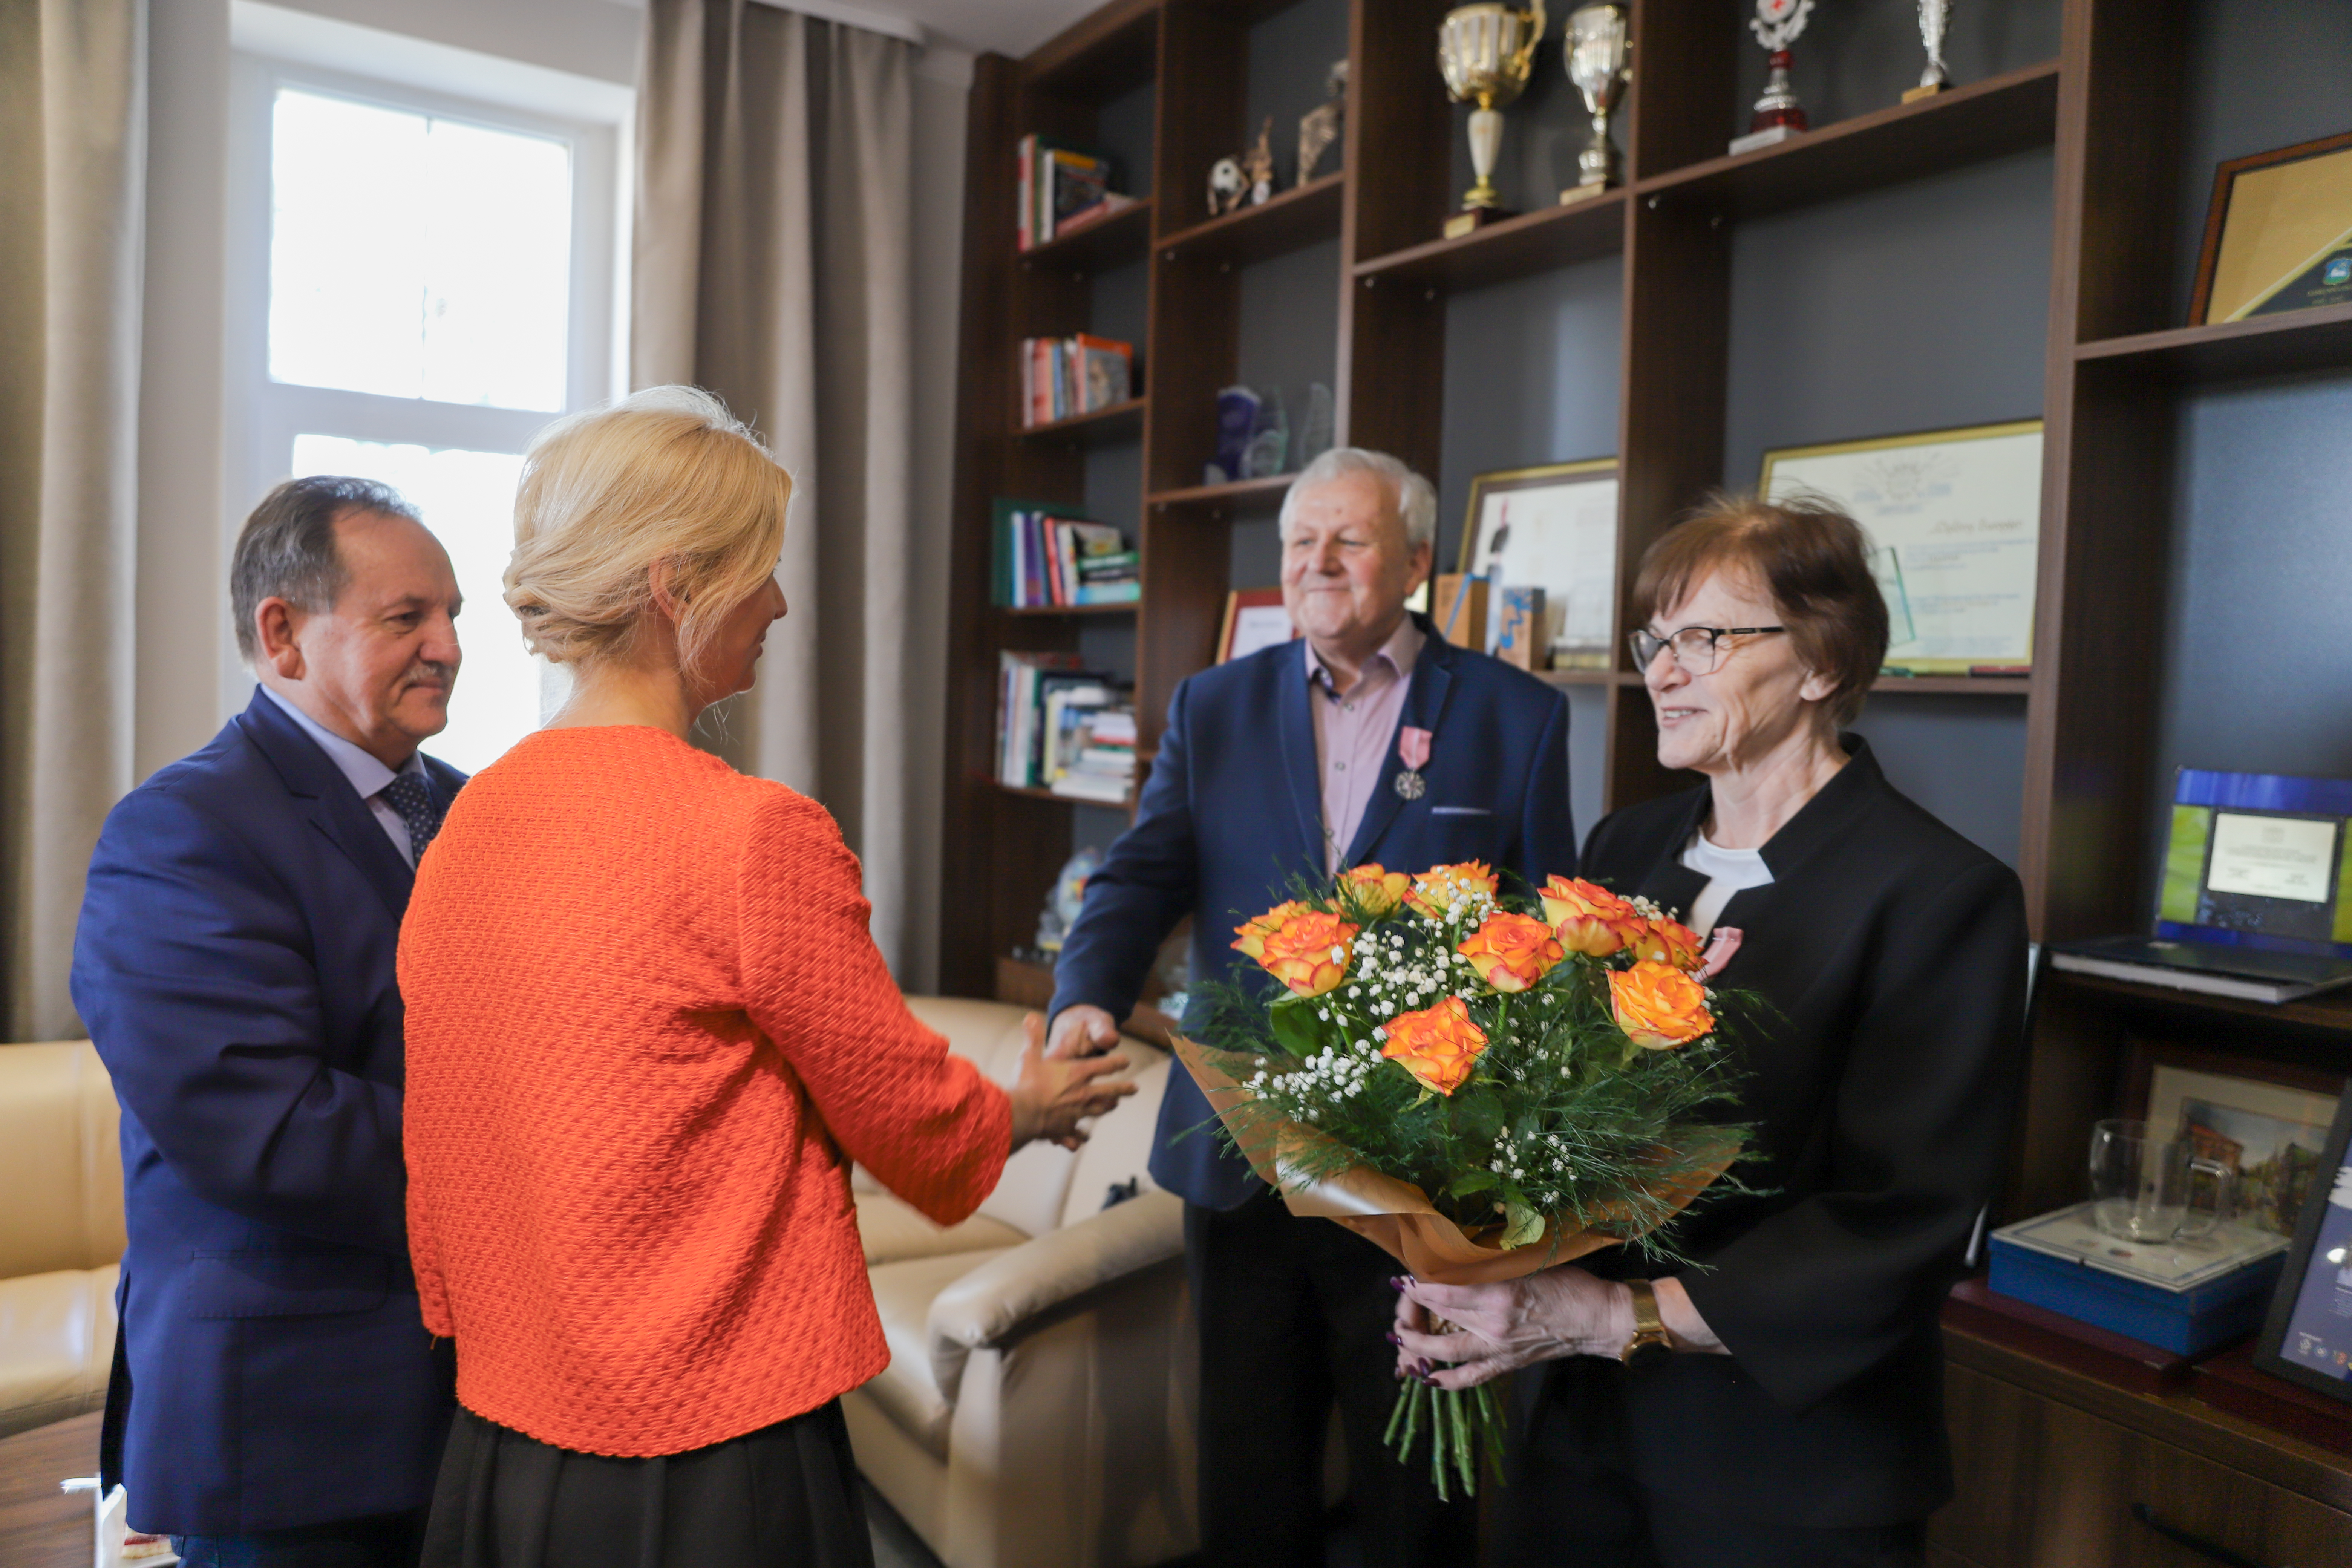 Pani Zastępca Burmistrza oraz Pan Burmistrz gratulują i wręczają bukiet herbacianych róż Państwu Miemcom za 60-letnie pożycie małżeńskie. 